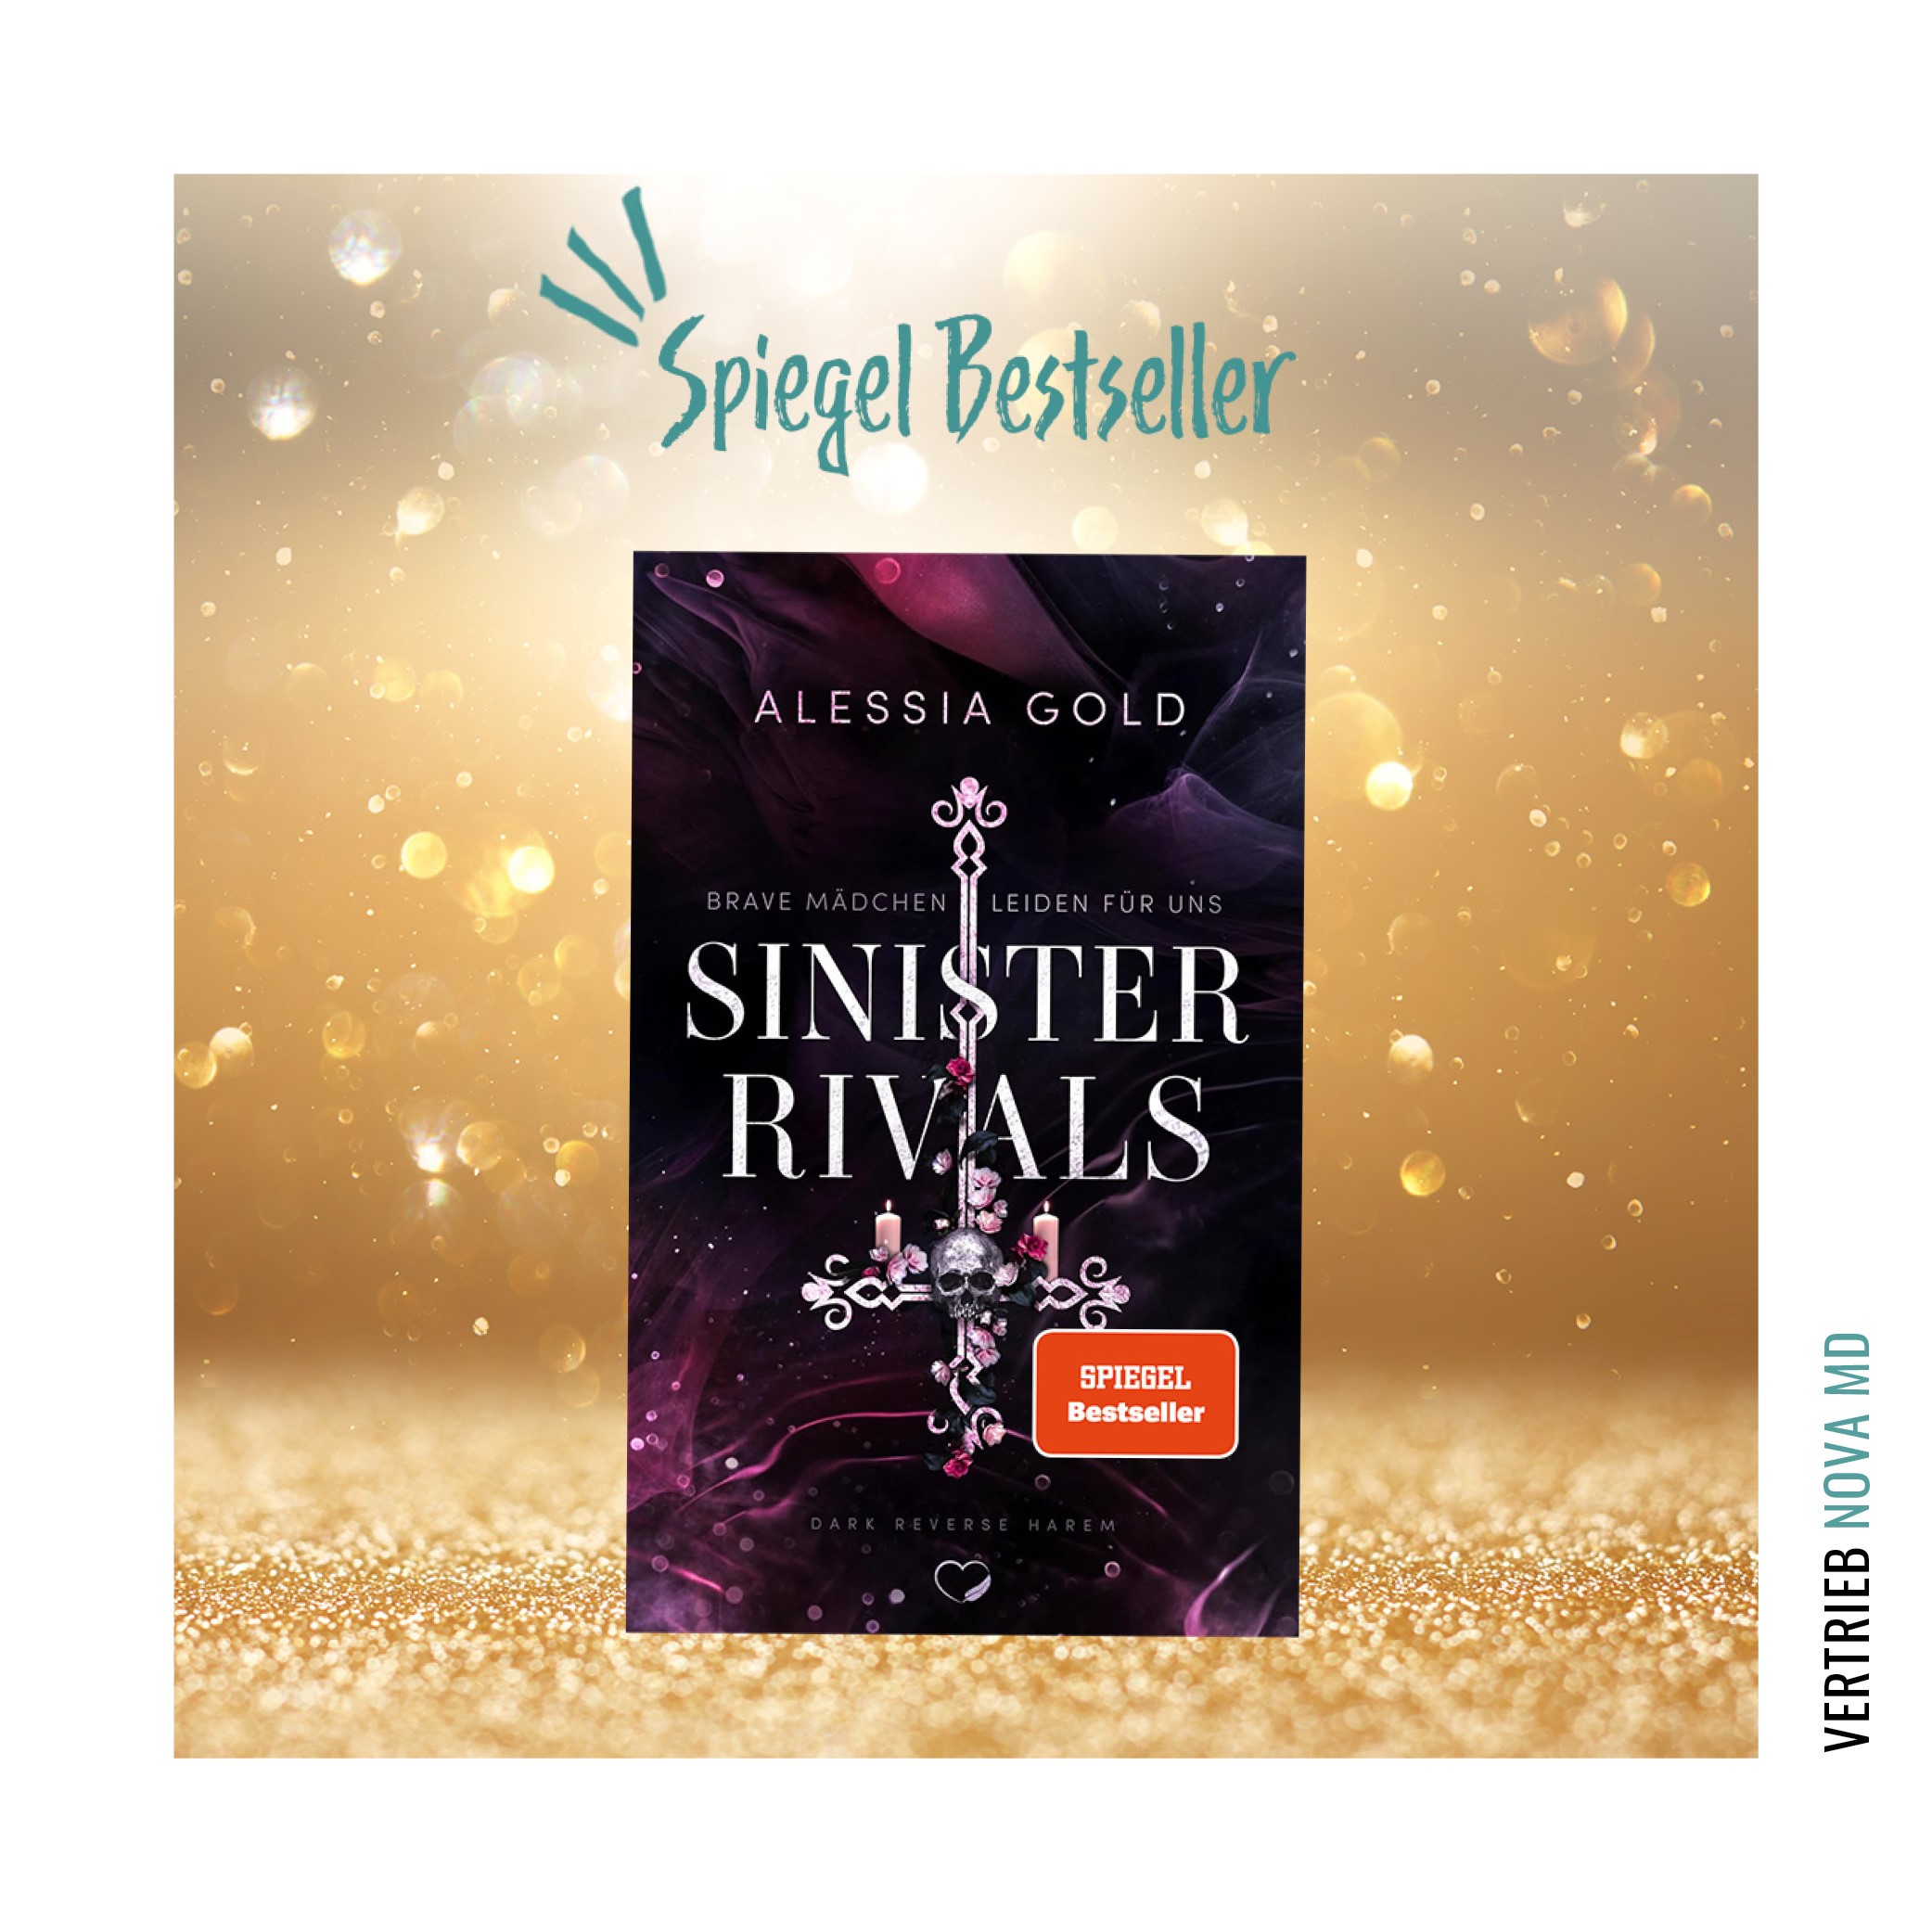 Cover des Buches "Sinister Rivals" von Alessia Gold mit Spiegel Bestseller Auszeichnung vor goldenem Hintergund